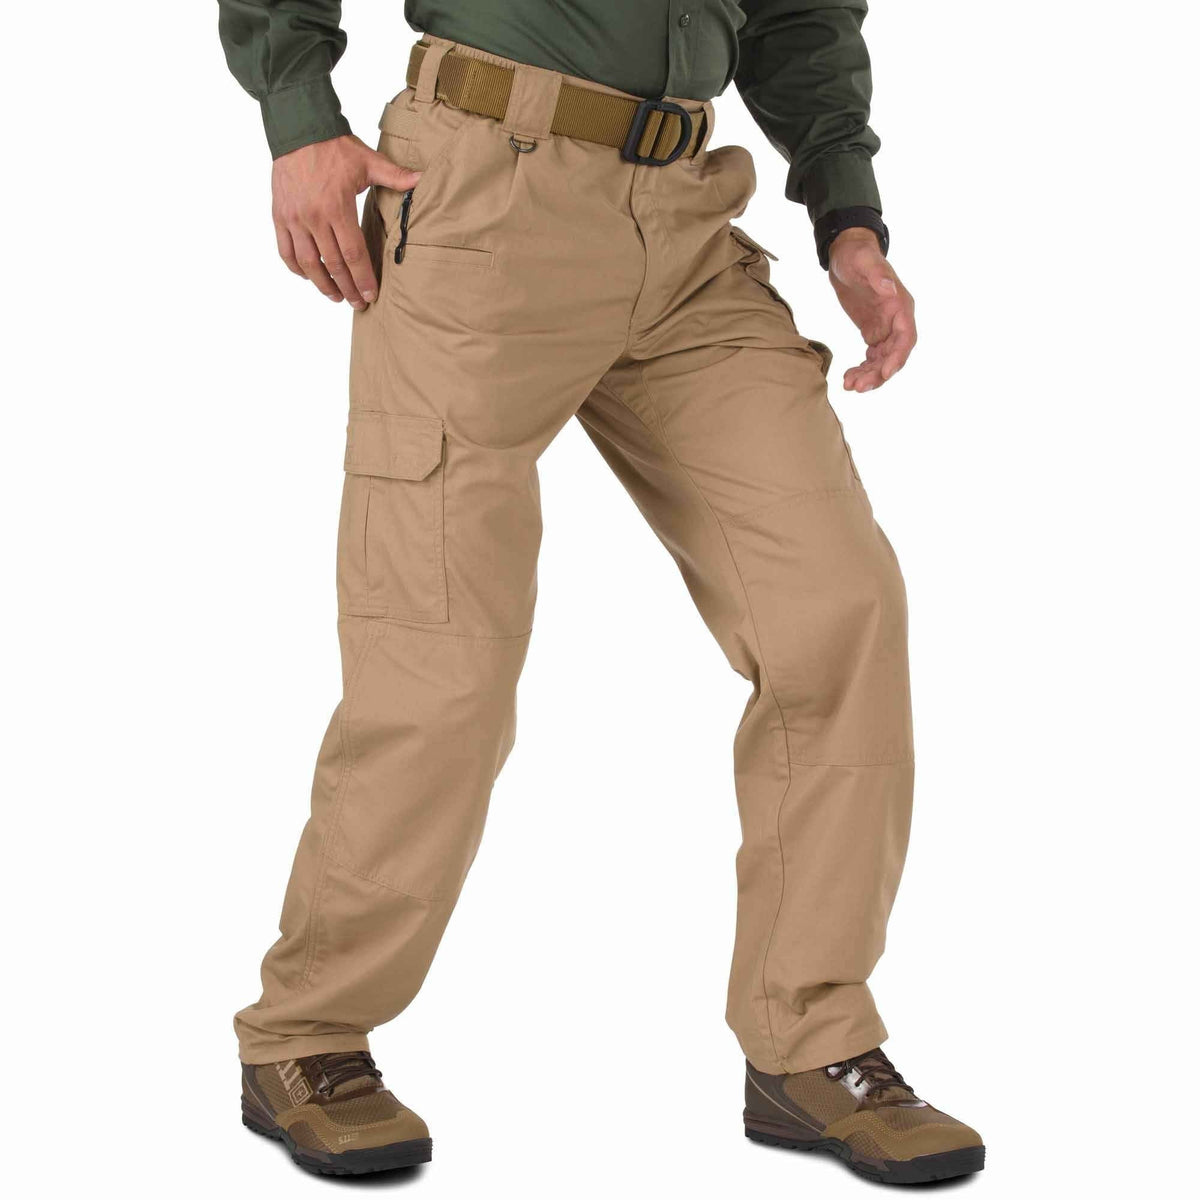 5.11 Tactical Taclite Pro Pants - Coyote Pants 5.11 Tactical 28 30 Tactical Gear Supplier Tactical Distributors Australia